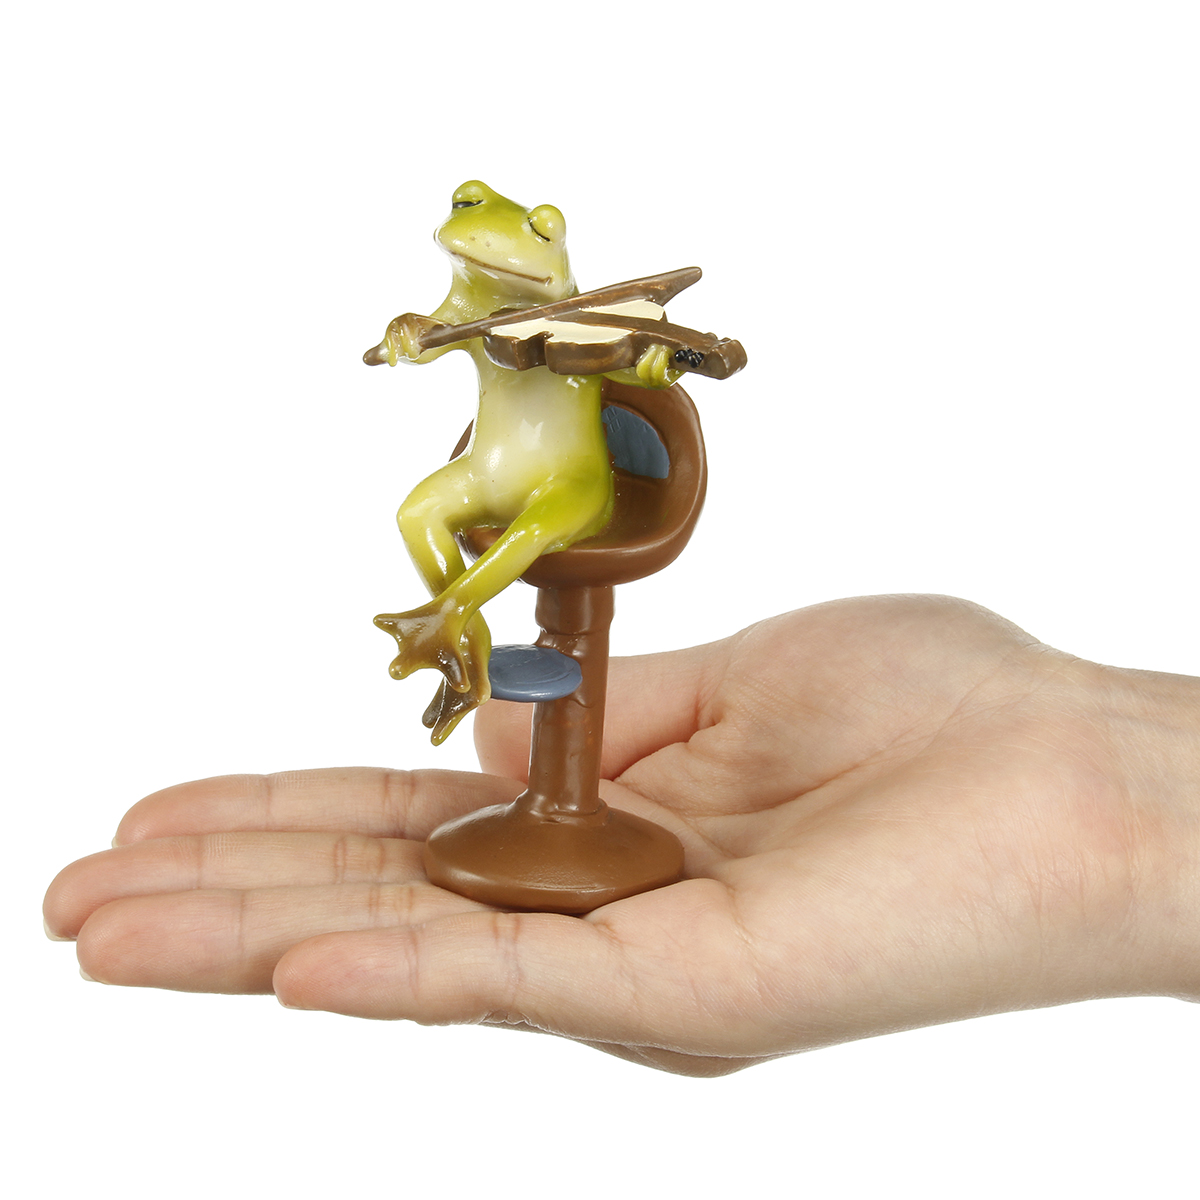 Cute-Frog-Statue-Figurine-Home-Office-Desk-Ornament-Garden-Bonsai-Decor-Gift-1704537-7